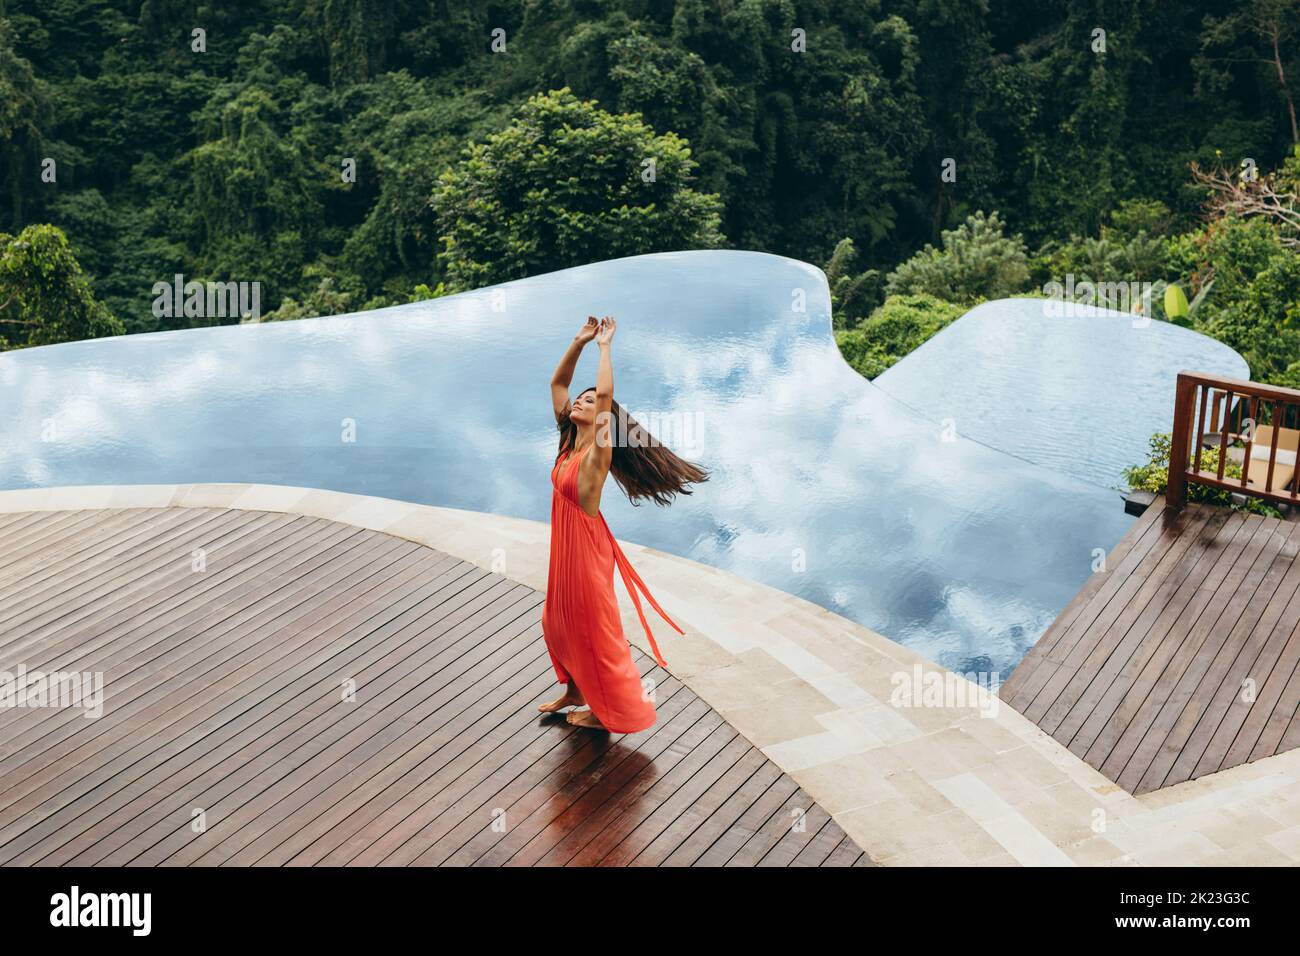 Foto de una hermosa joven bailando cerca de la piscina. Mujer disfrutando al lado de la piscina del complejo turístico. Foto de stock